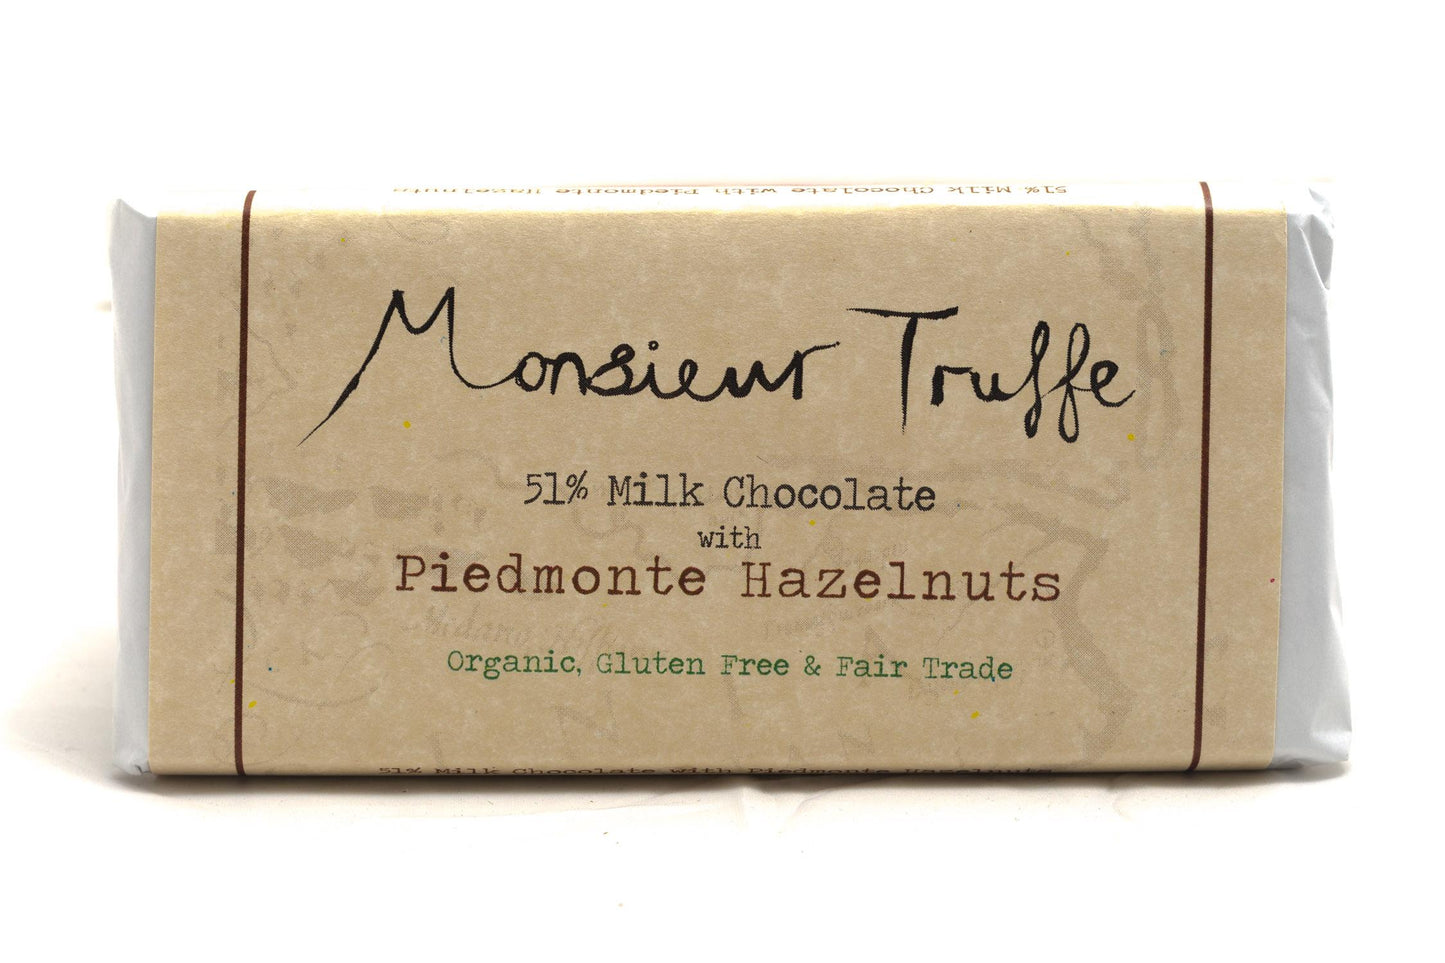 Monsieur Truffe 51% Milk Chocolate with Piedmonte Hazelnuts